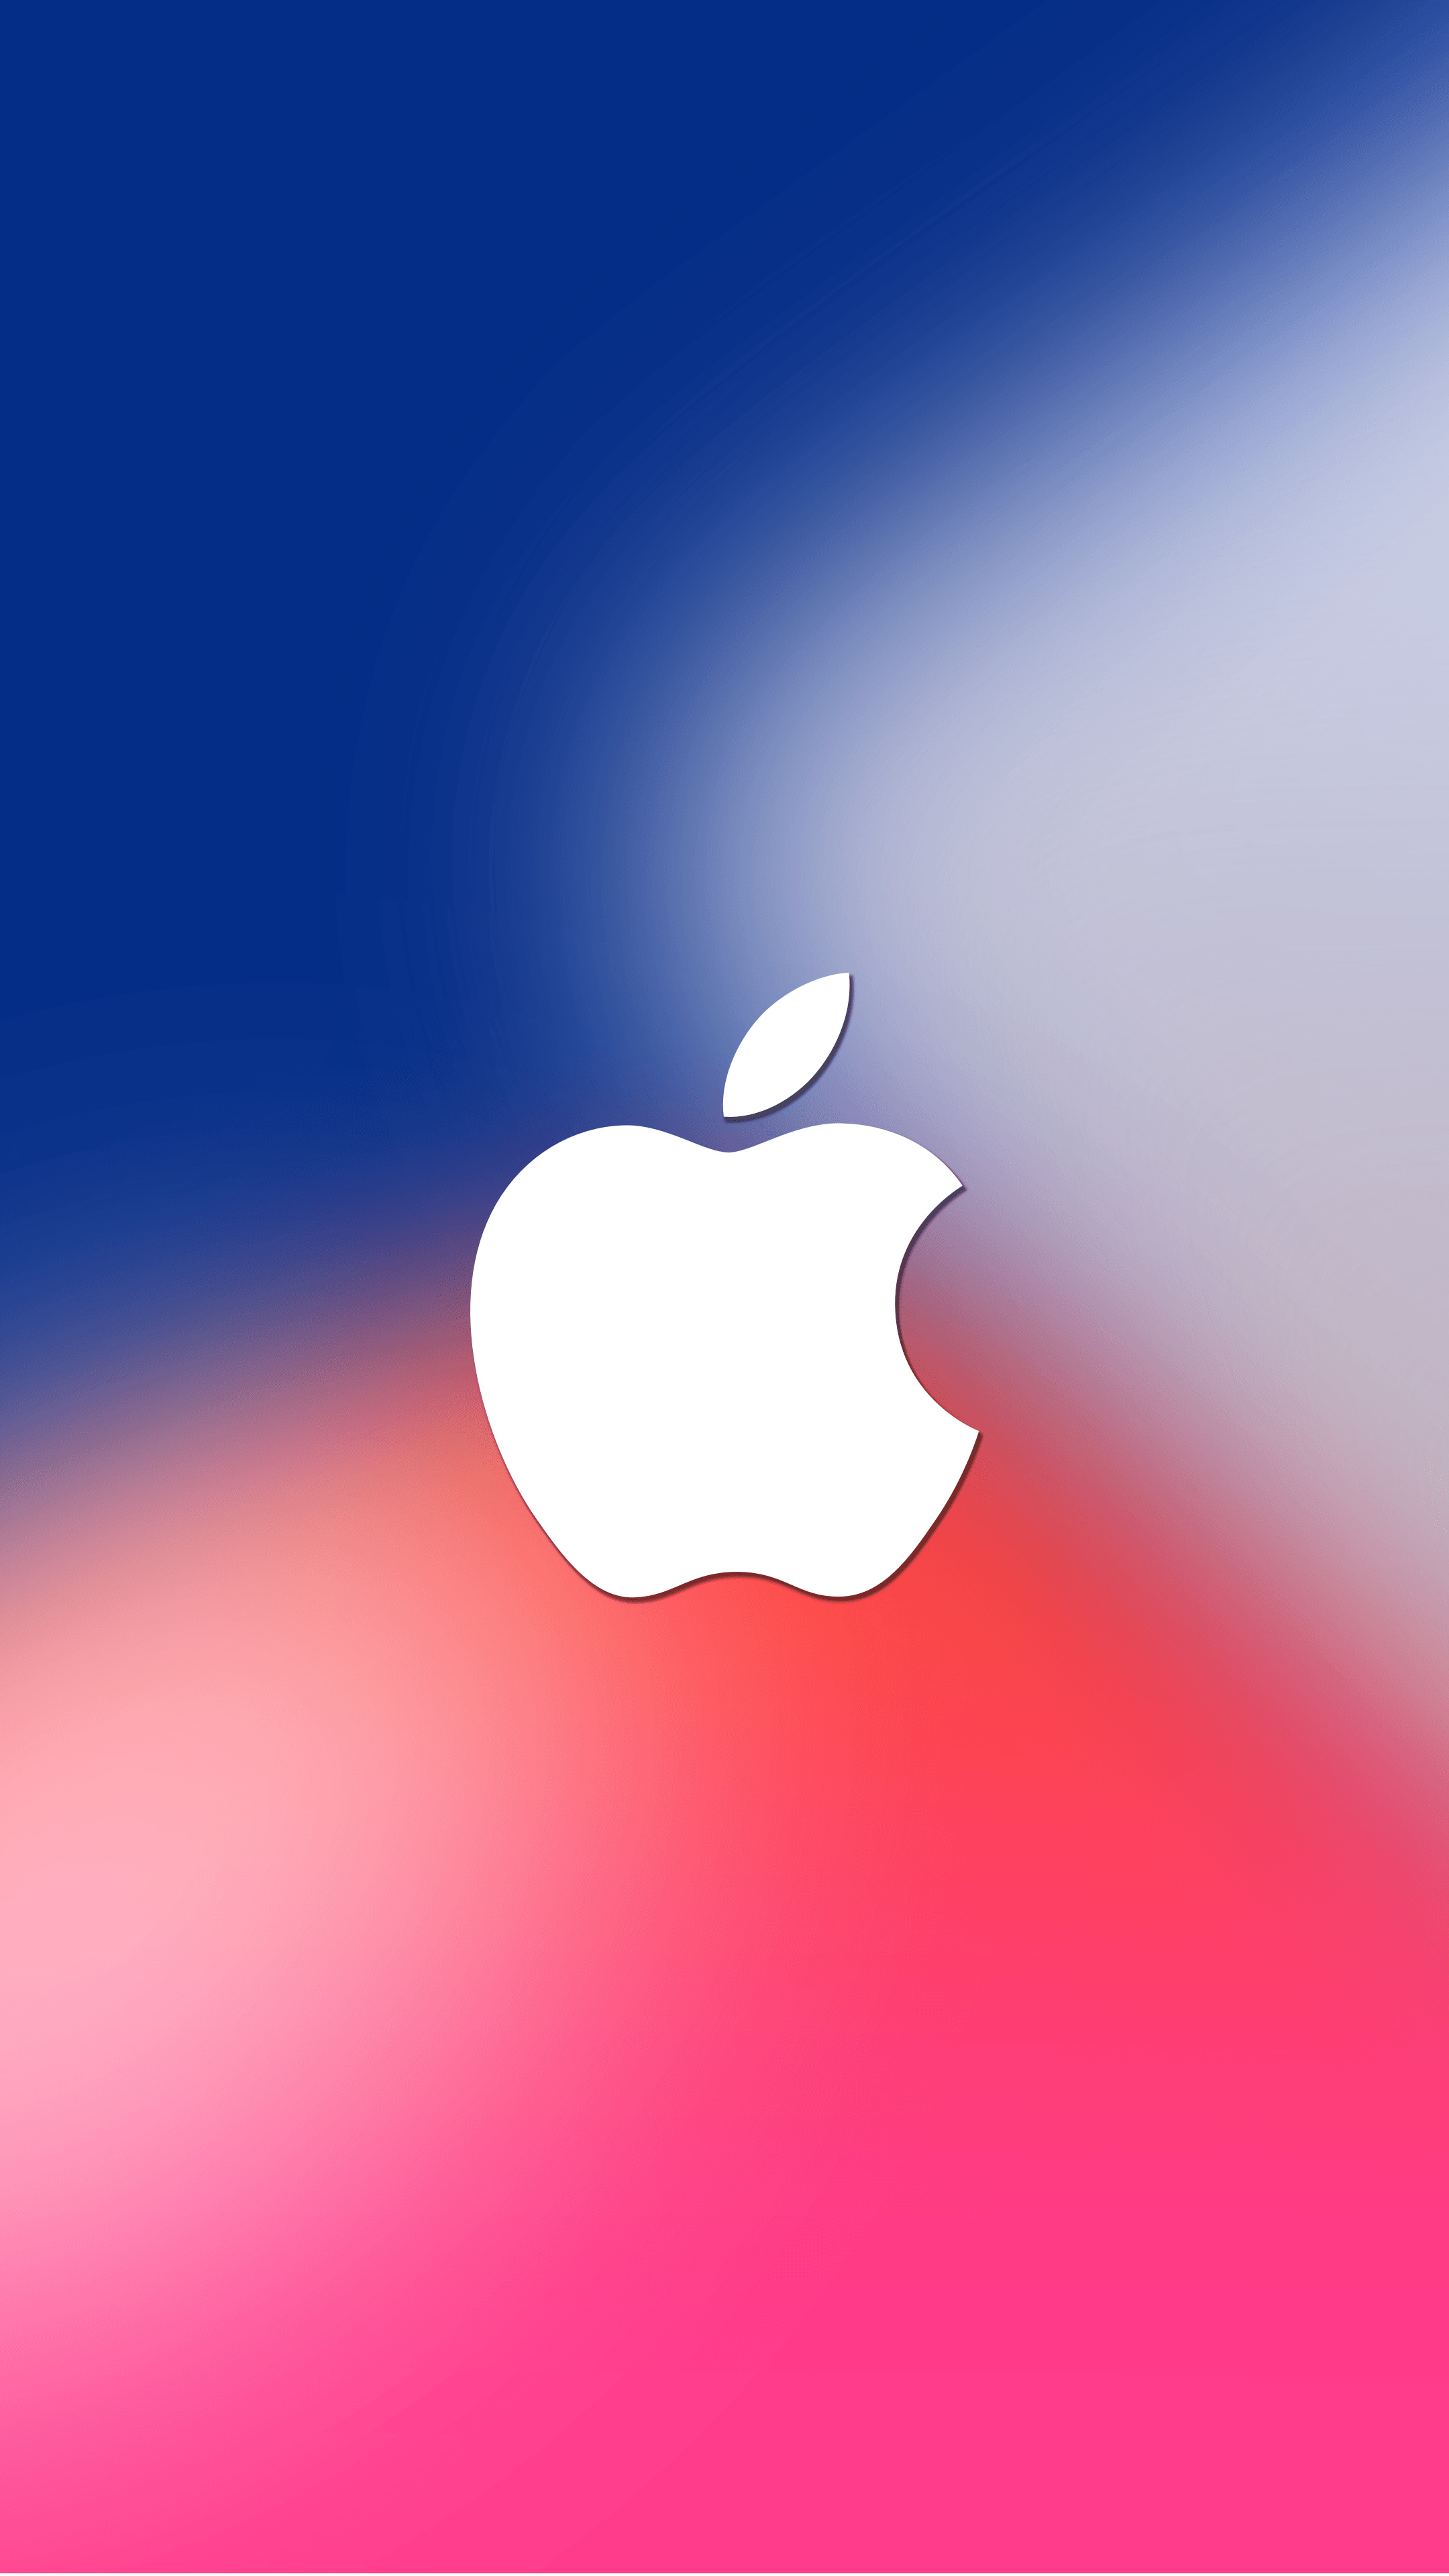 iPhone logo, Stylish backgrounds, Iconic branding, Smartphone elegance, 2160x3840 4K Phone